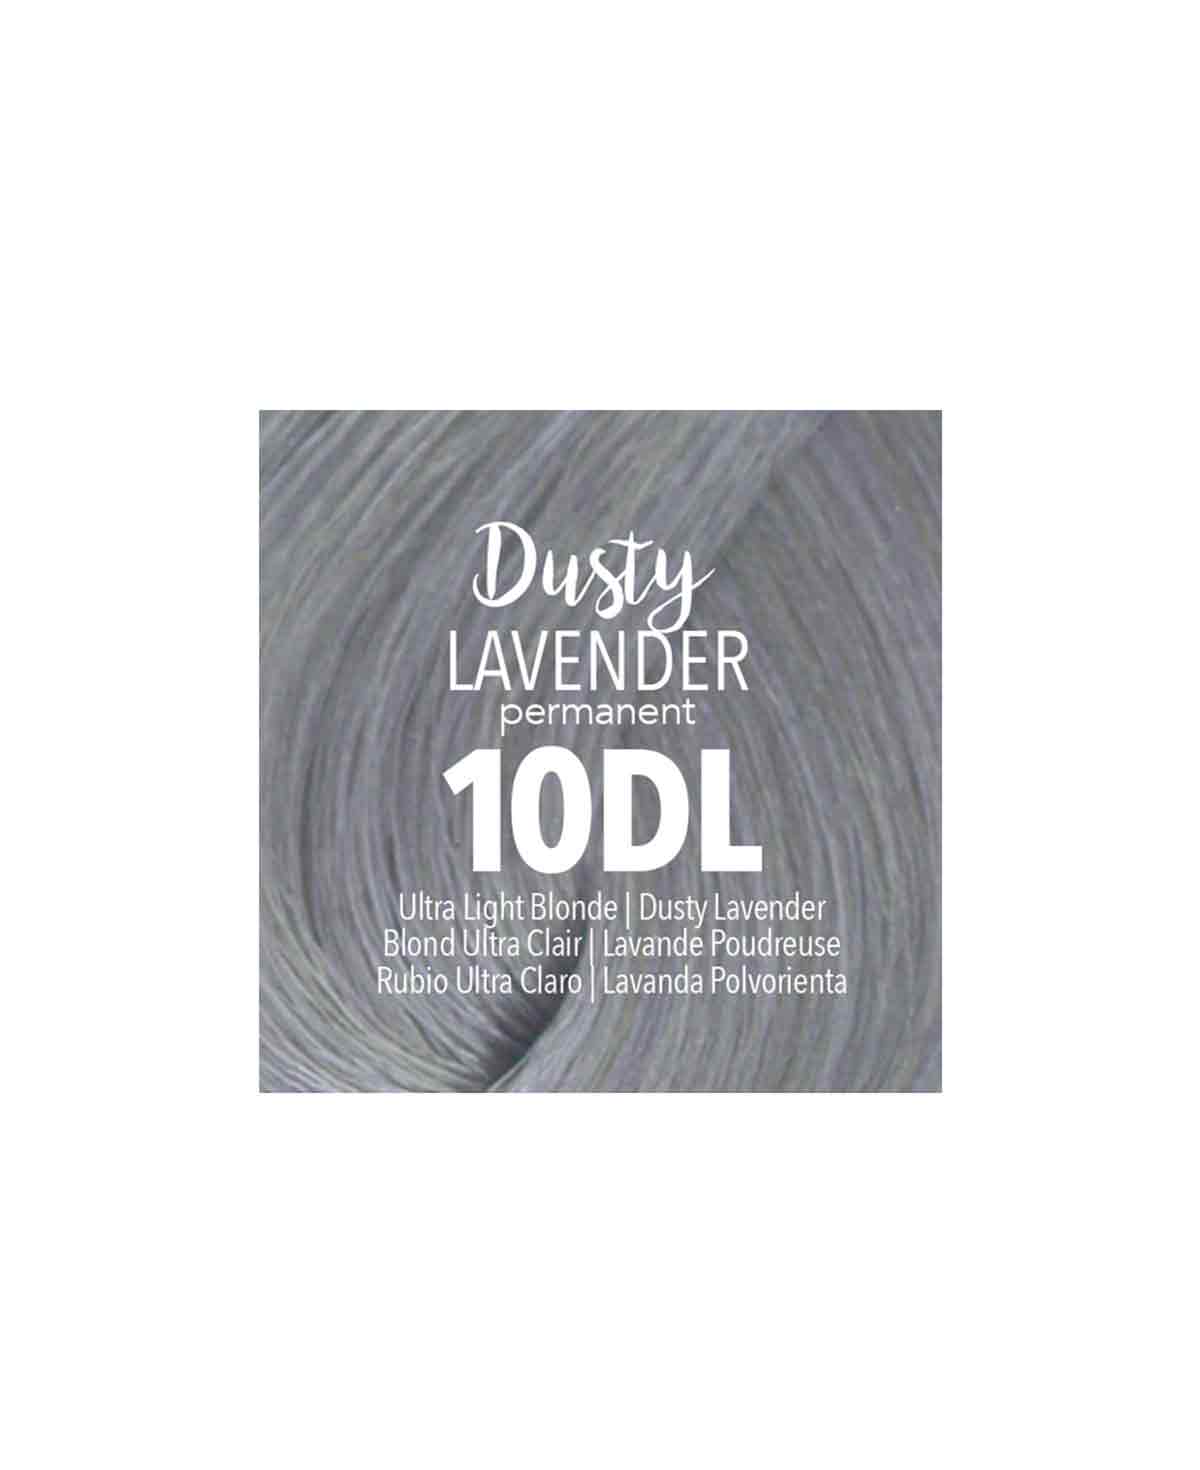 Mydentity - 10DL Ultra Light Blonde Dusty Lavender